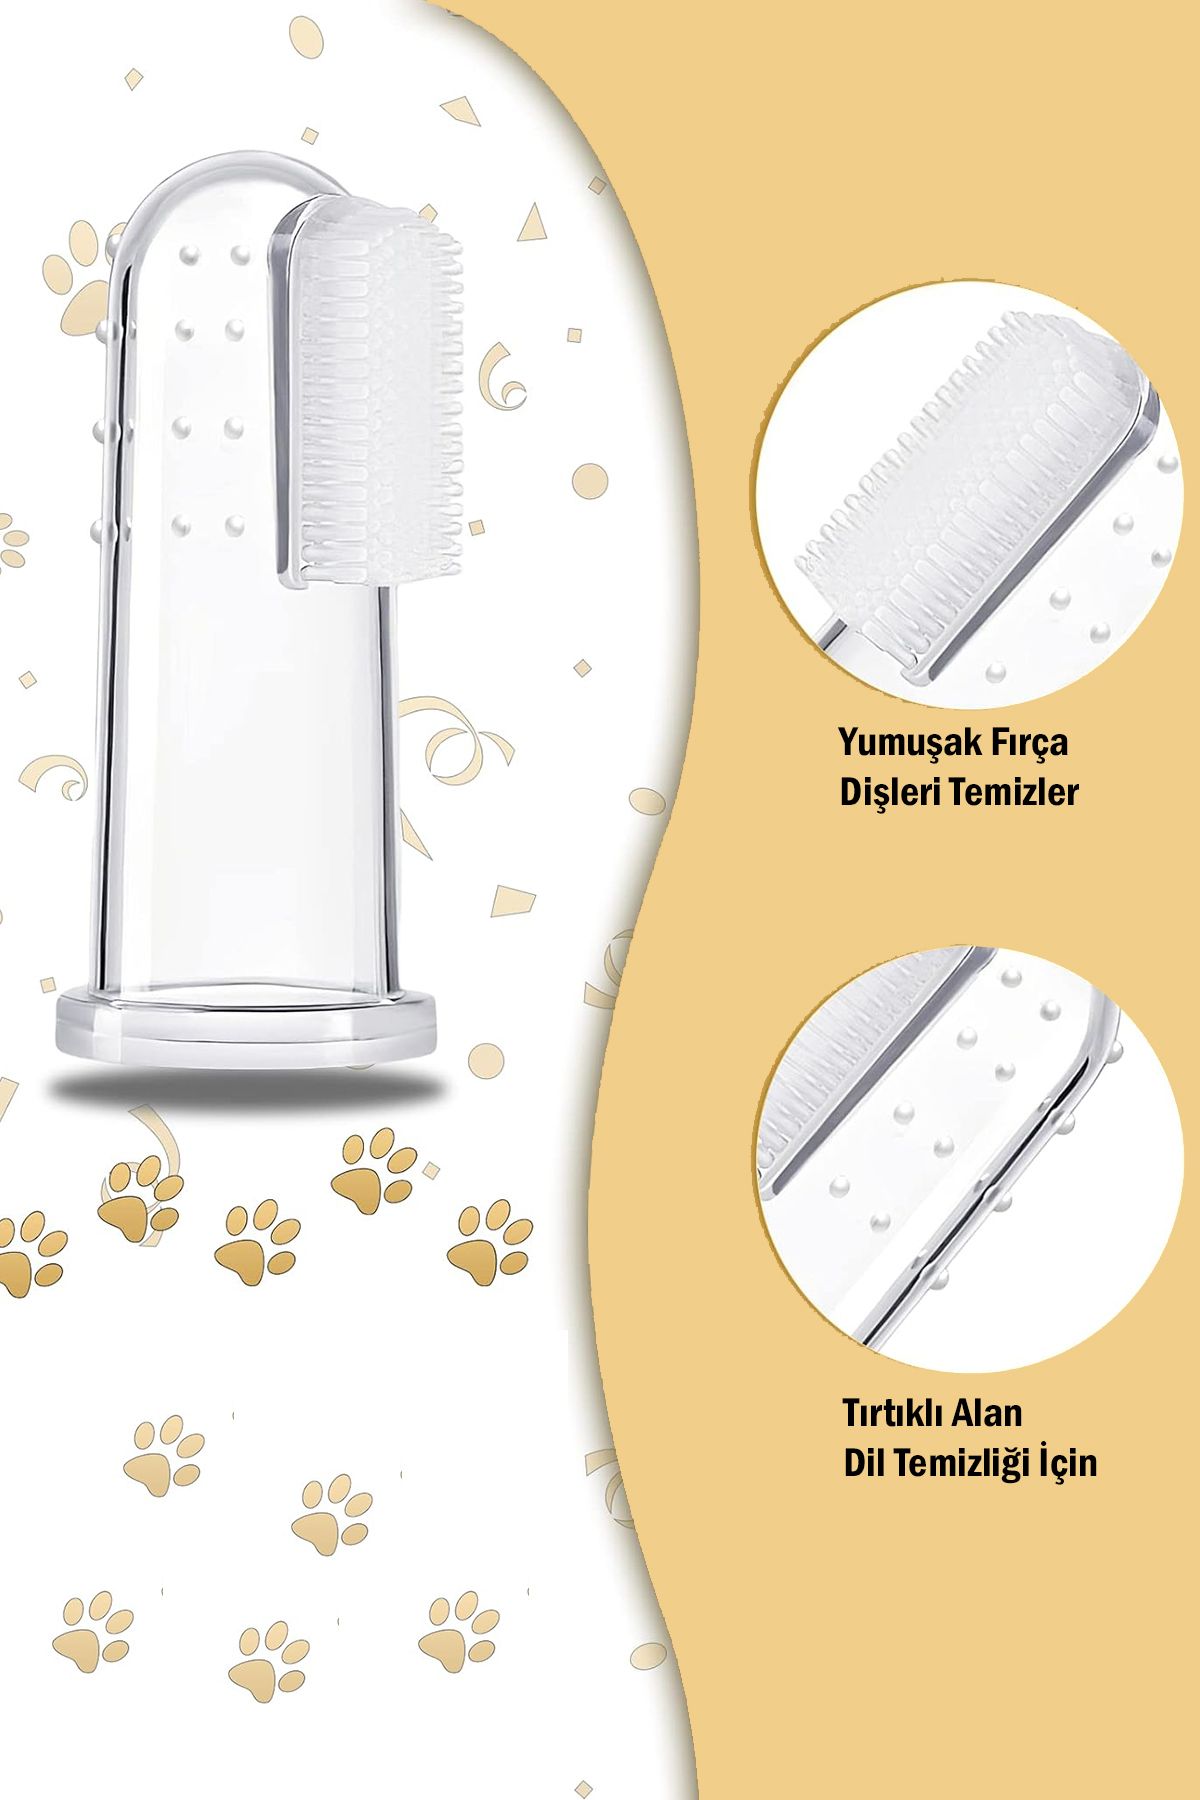 Factorial Parmak Şekilli Slikon Diş Kaşıyıcı ve Fırça Yavru Kedi Yavru Kopek Bakım Ürünleri Öne Çıkan Ürünler